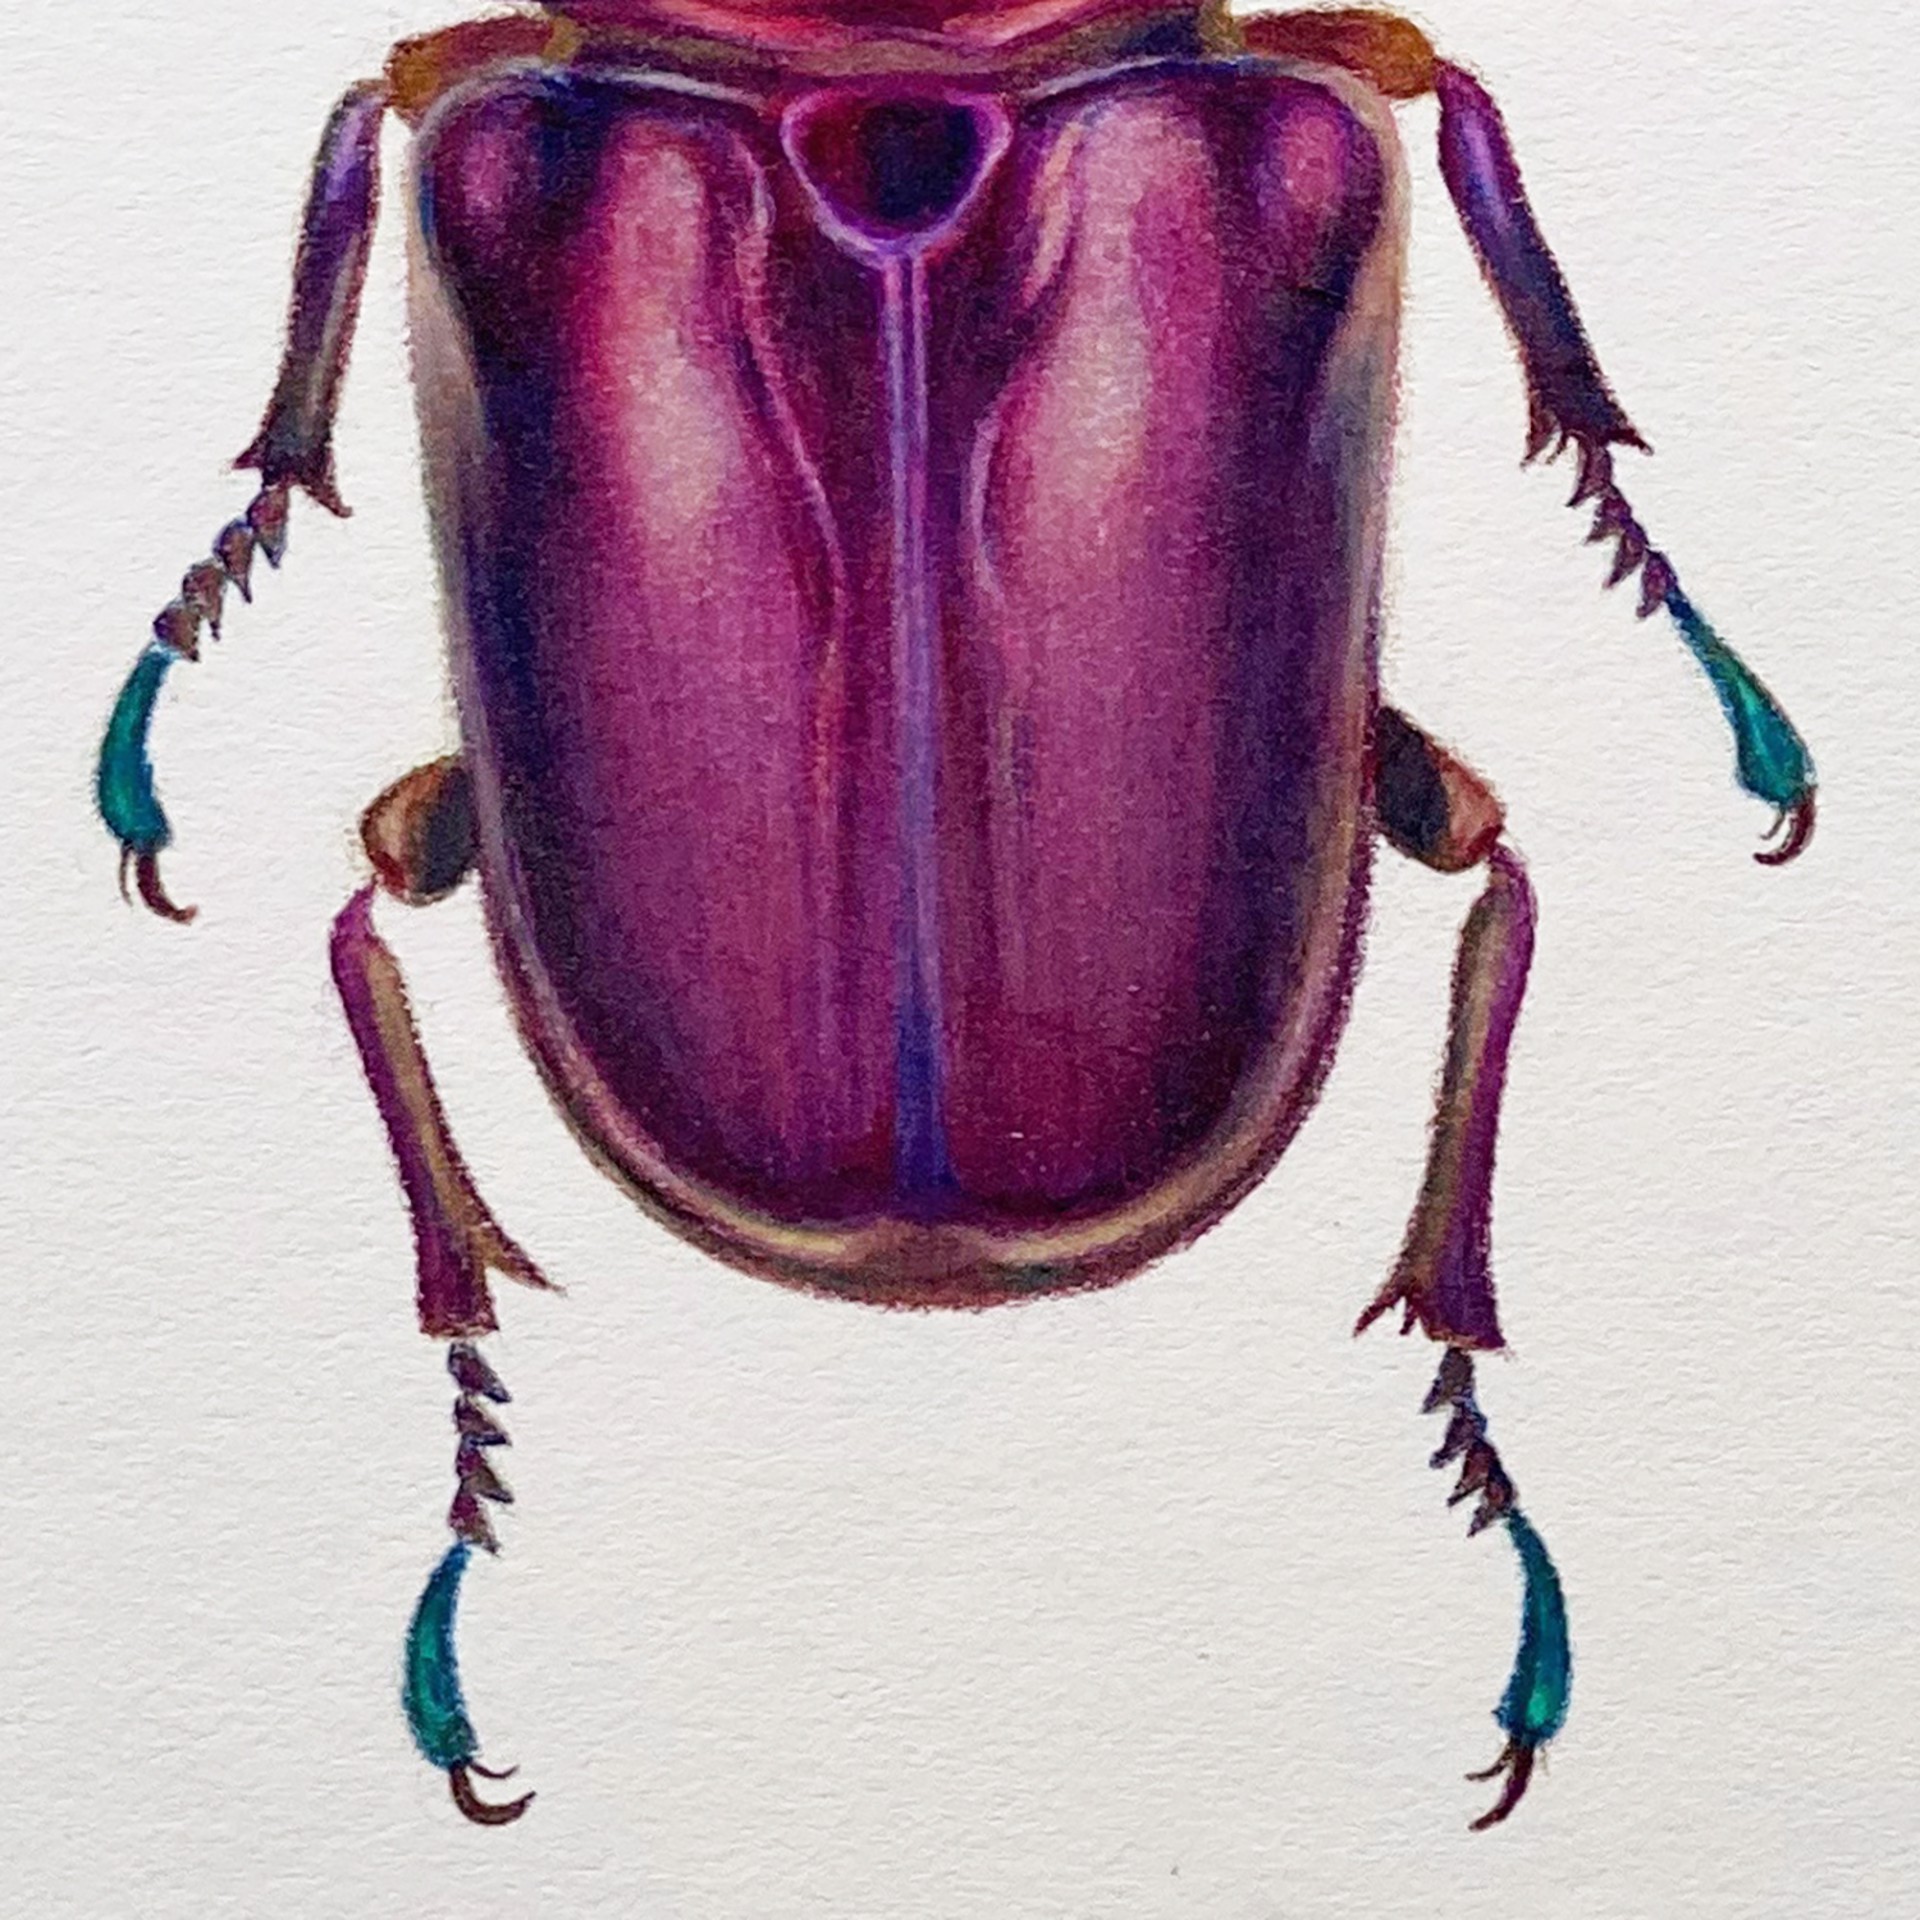 Coleoptera Chroma #2 by Hannah Hanlon